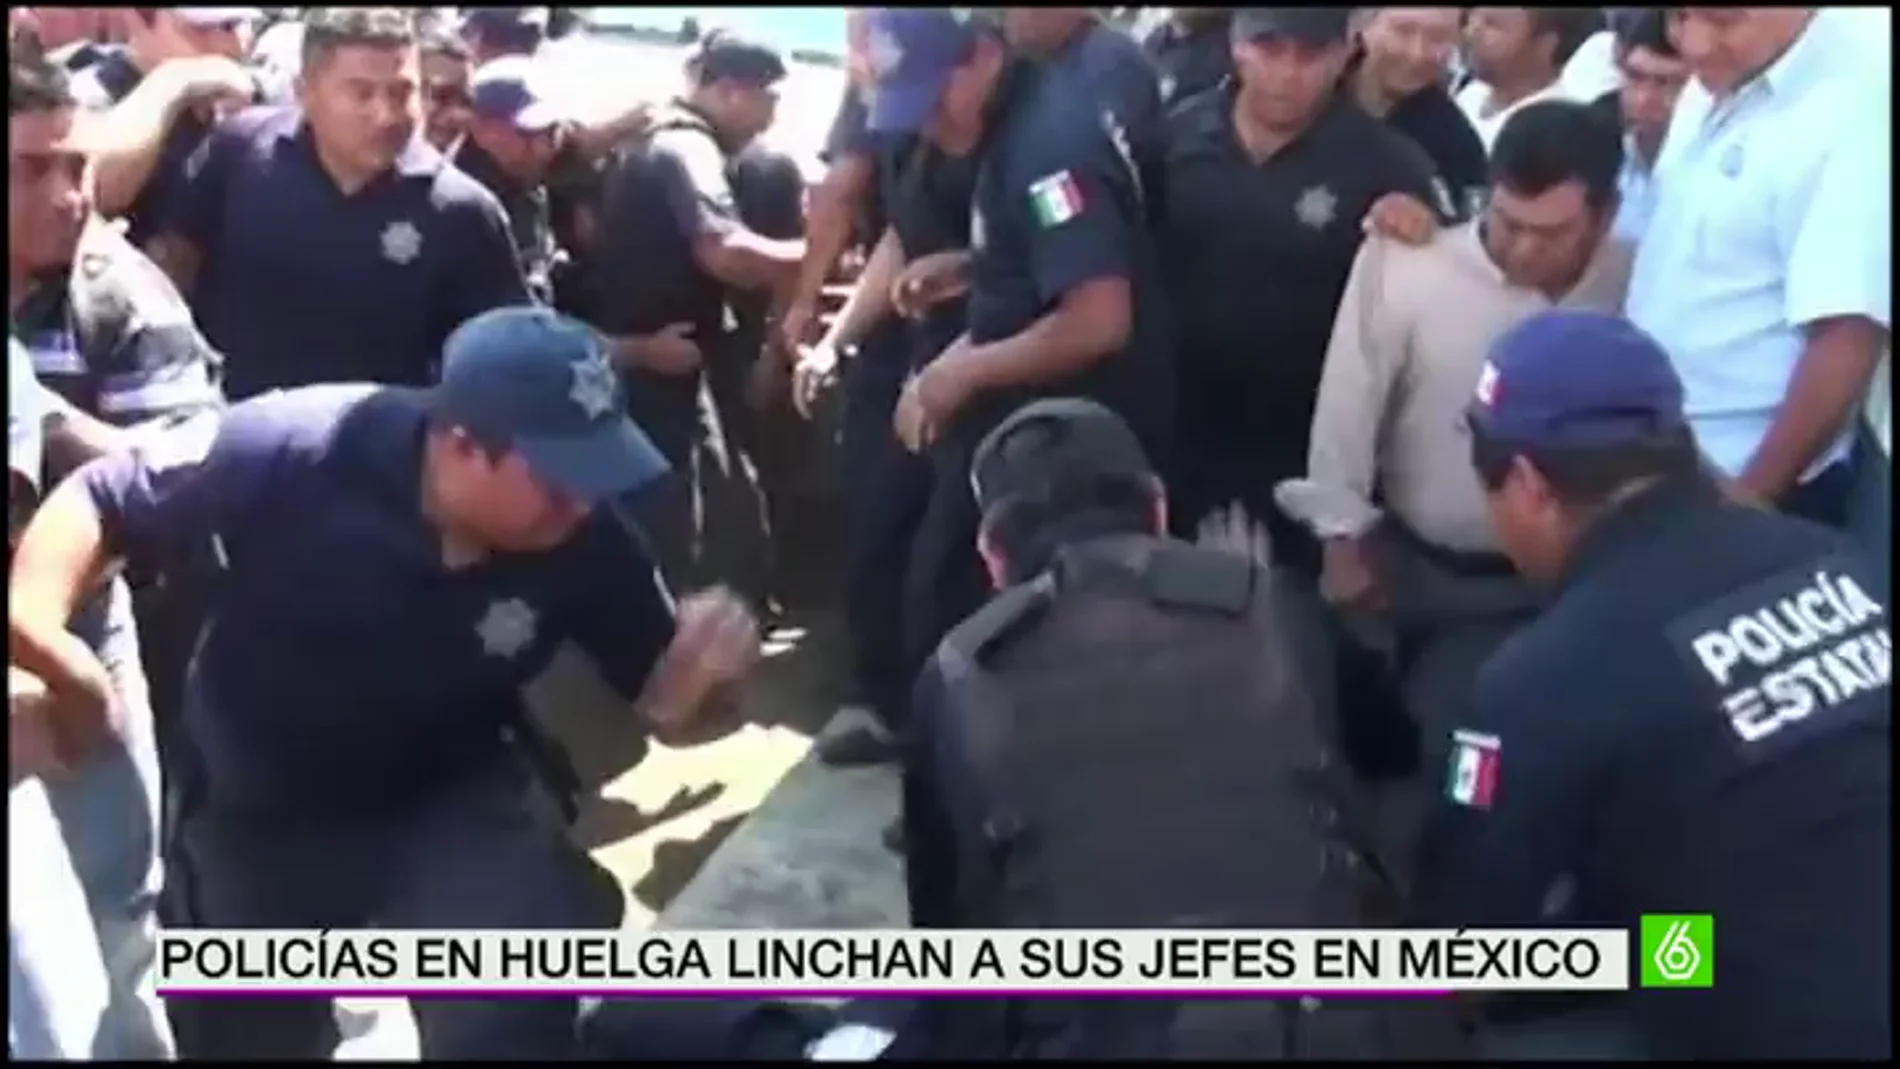 Policías mexicanos agreden violentamente a su superior acusado de abuso de poder